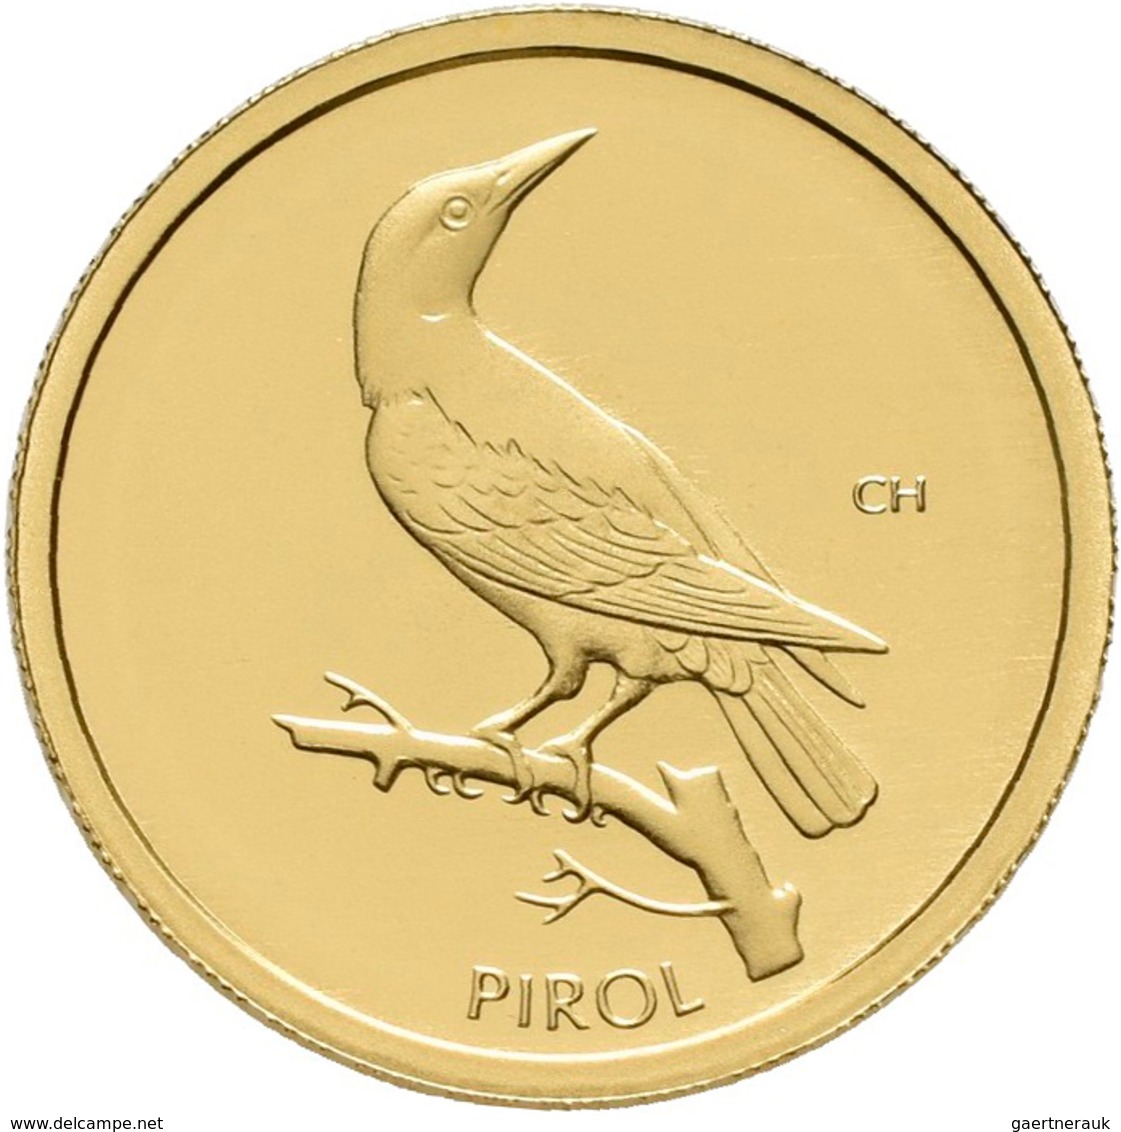 Deutschland - Anlagegold: 5 X 20 Euro 2017 Pirol (A,D,F,G,G), Serie Heimische Vögel. In Original Kap - Deutschland